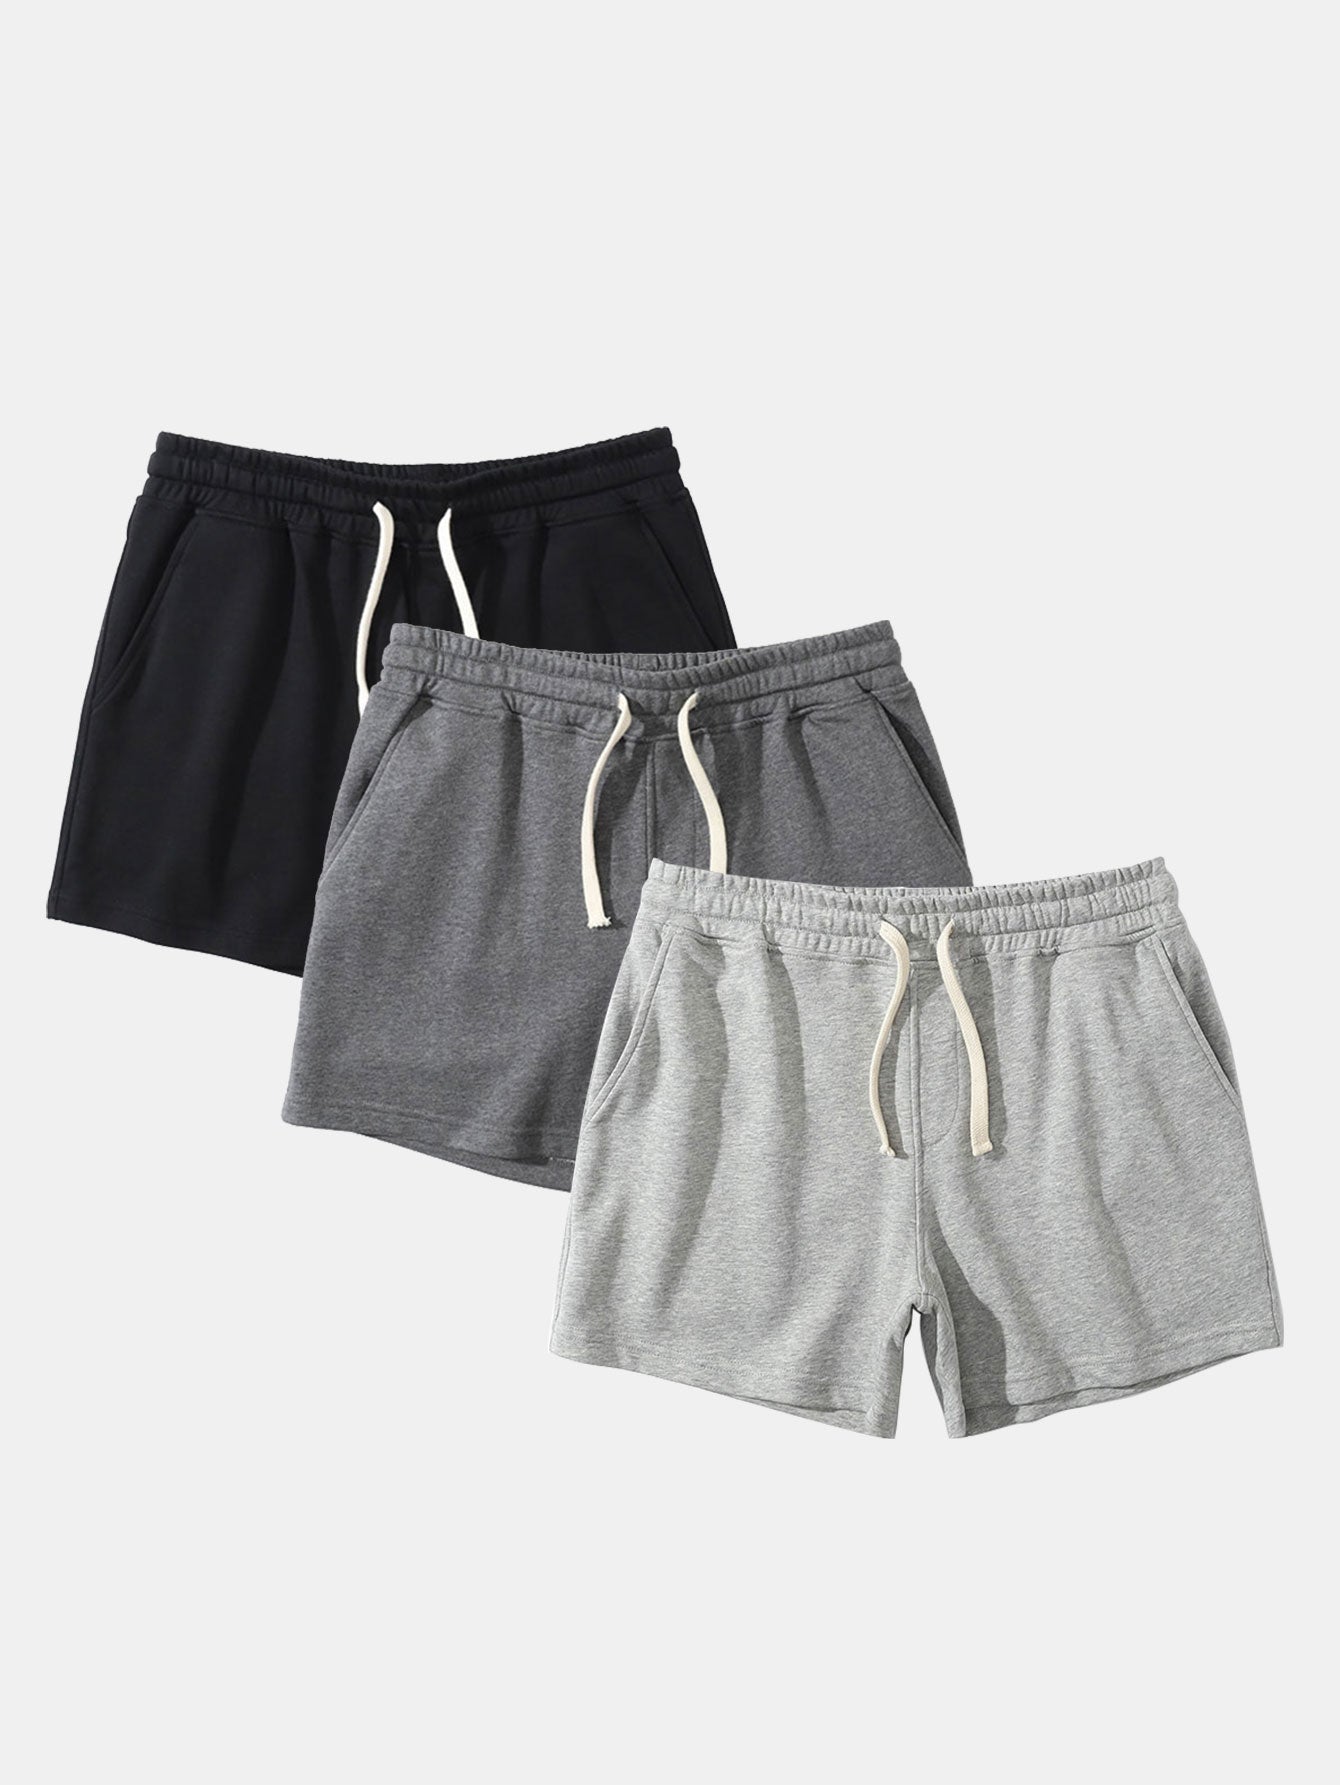 Set of 3 Shorts